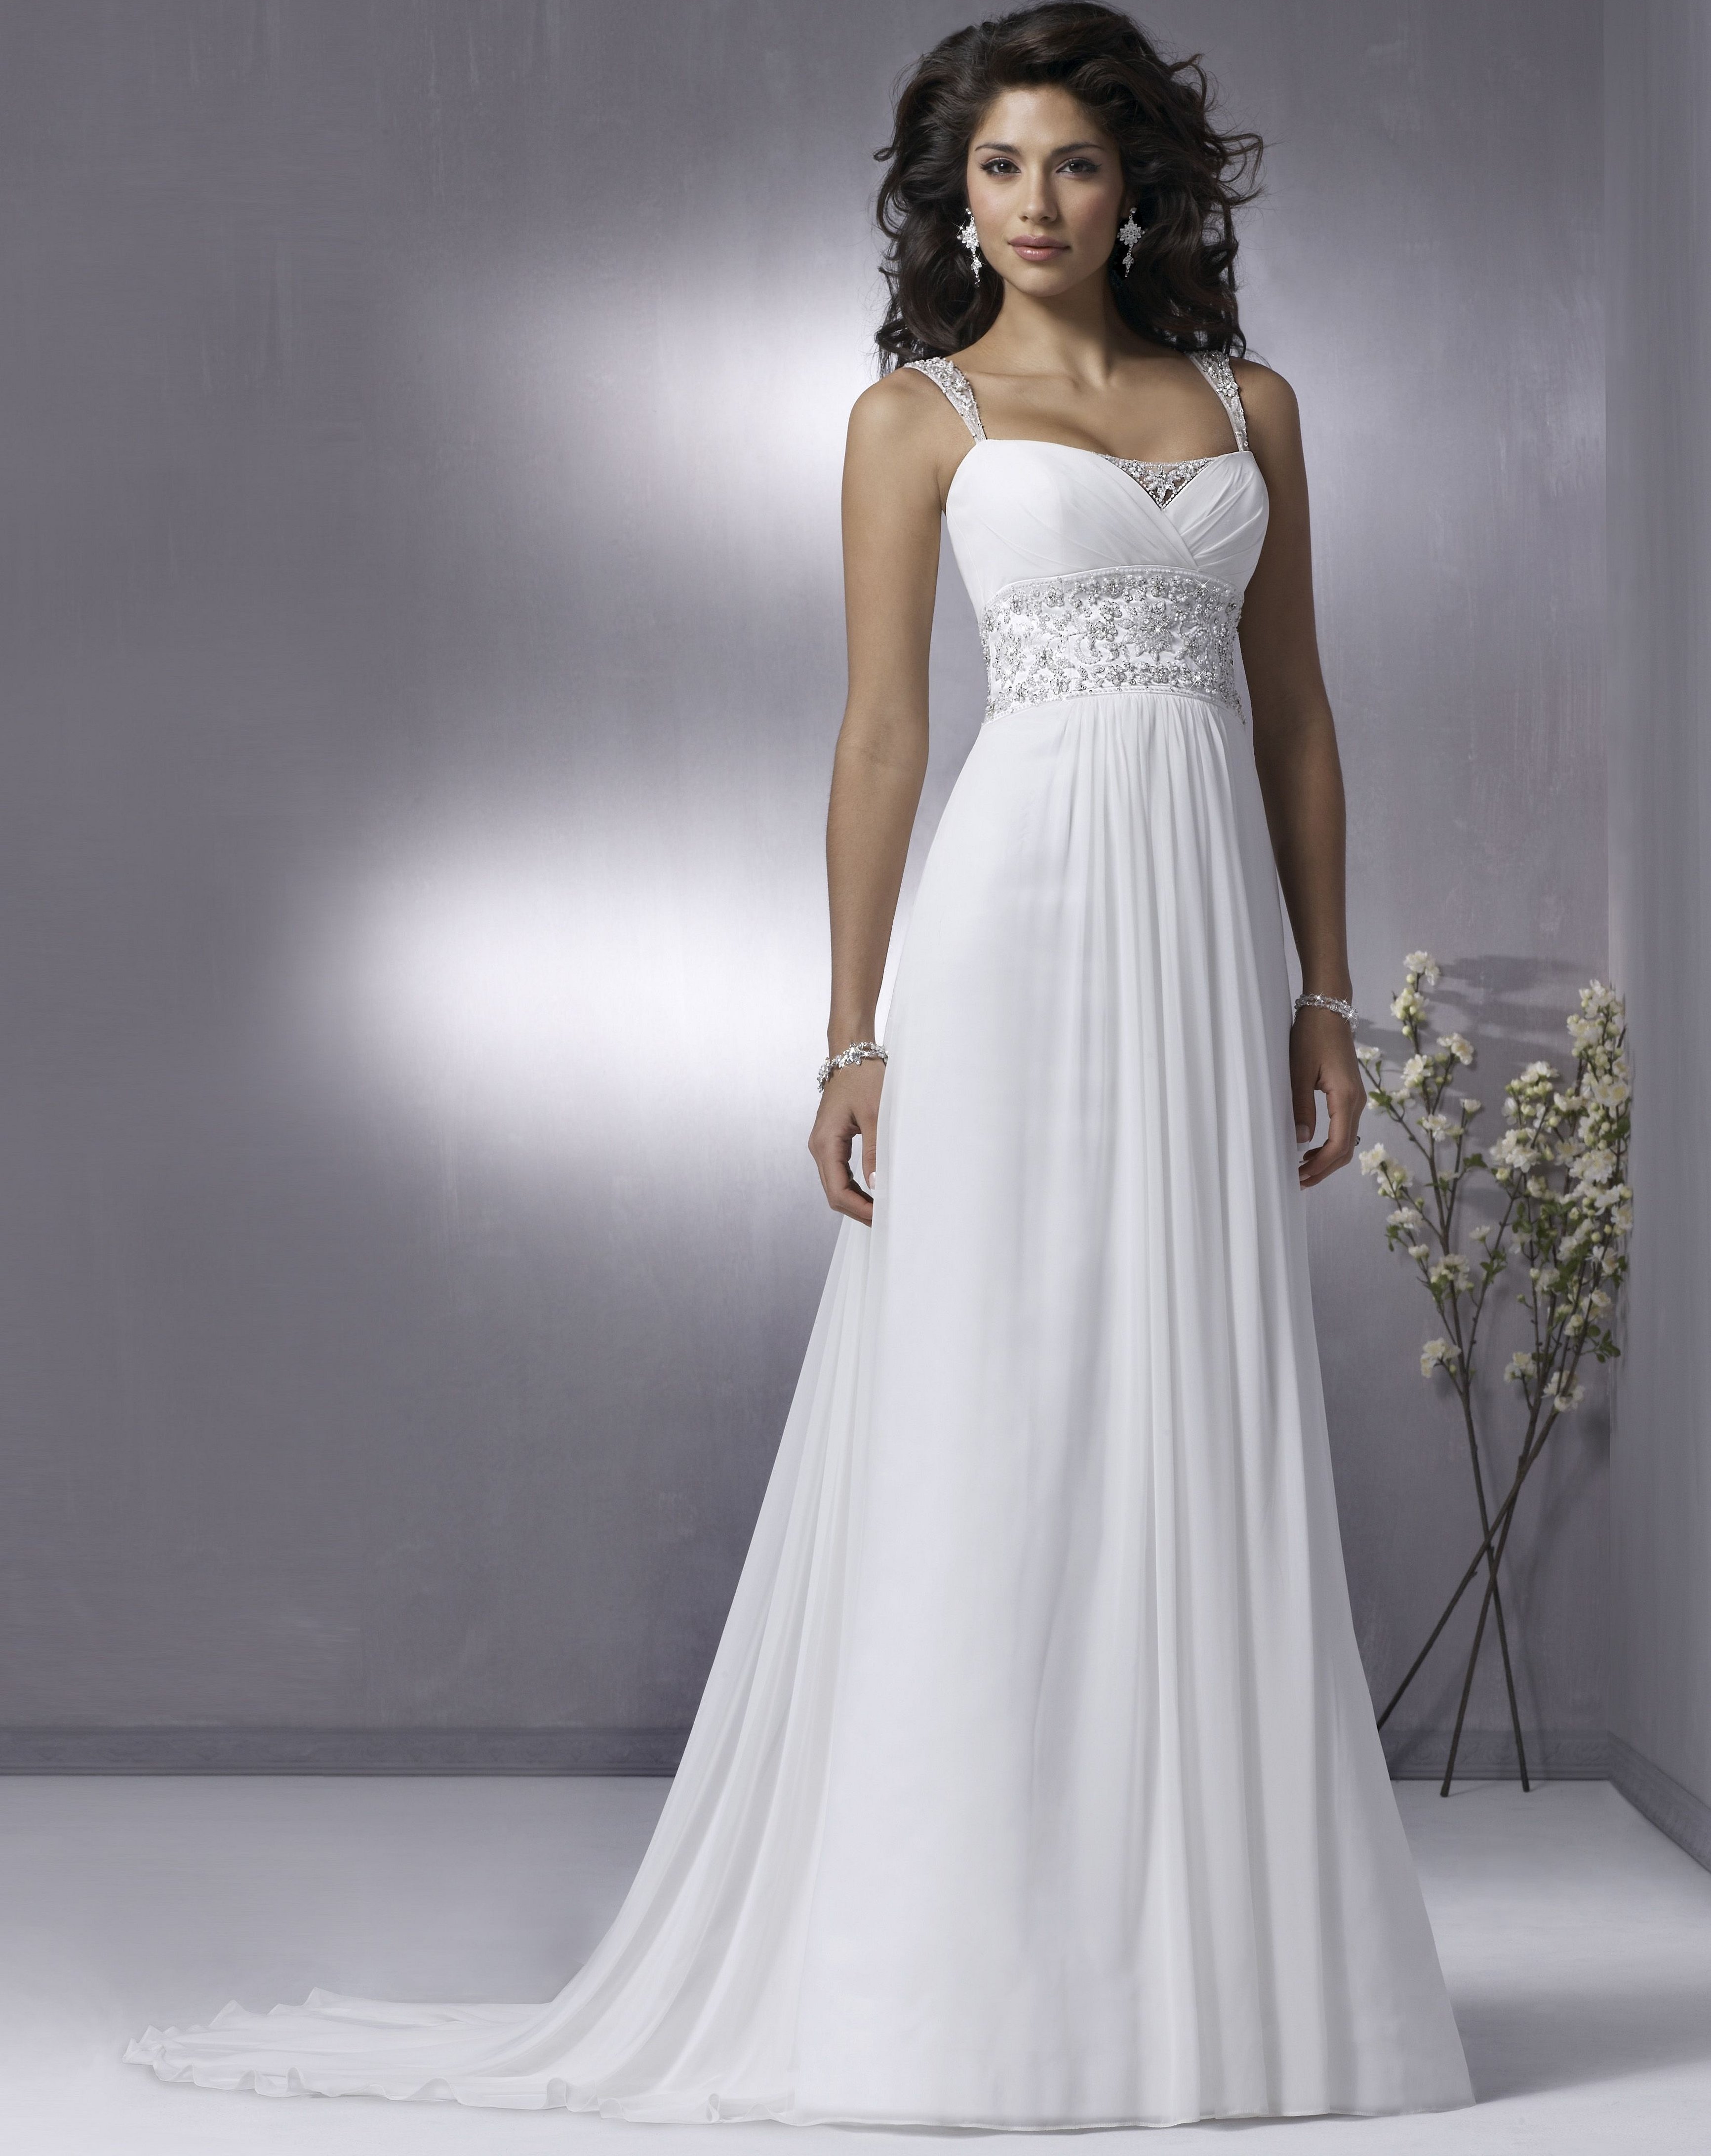 Свадебное платье в греческом стиле с широким поясом